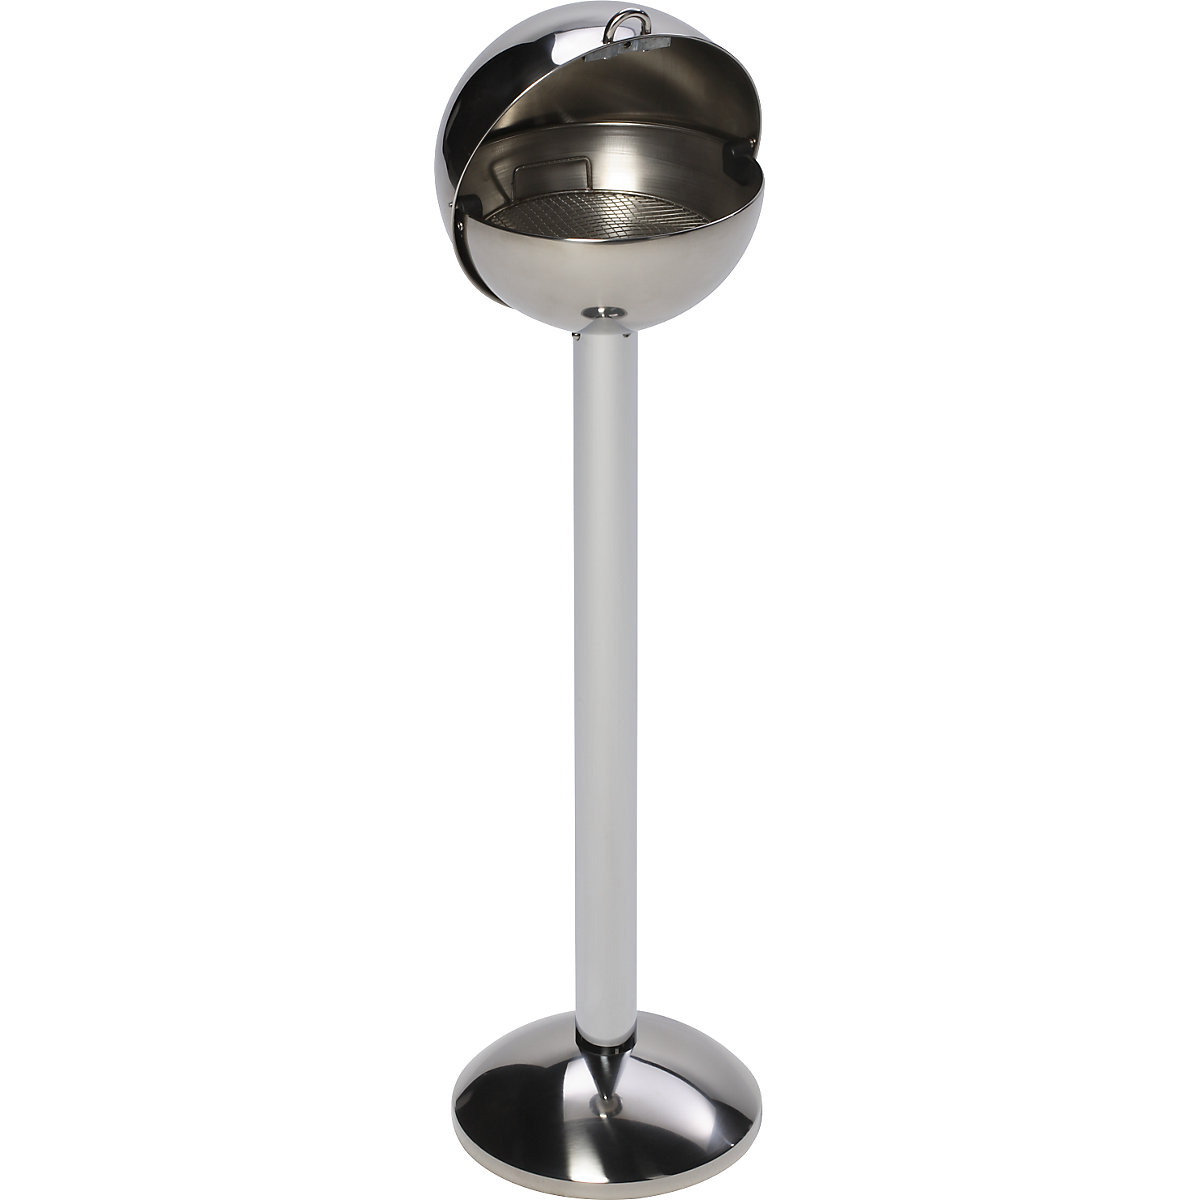 Spherical pedestal ashtray made of stainless steel - VAR